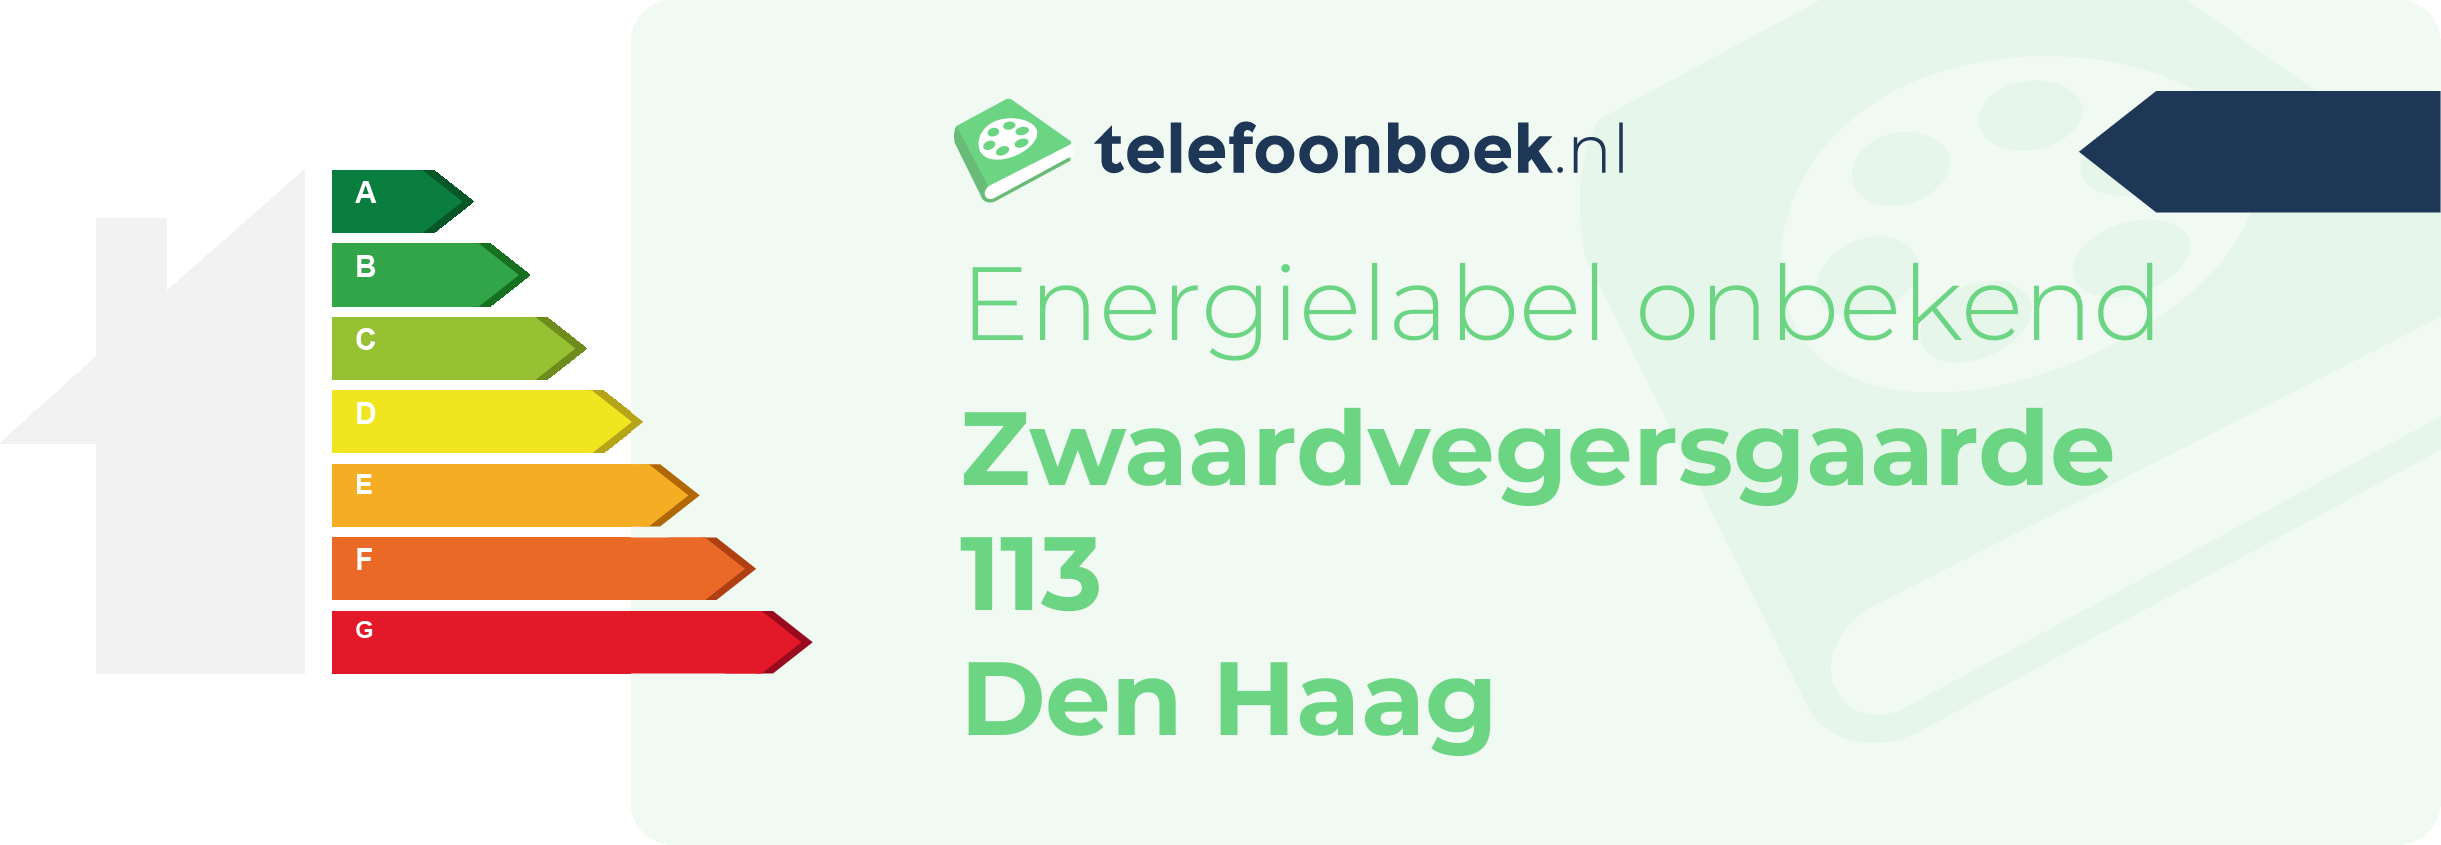 Energielabel Zwaardvegersgaarde 113 Den Haag